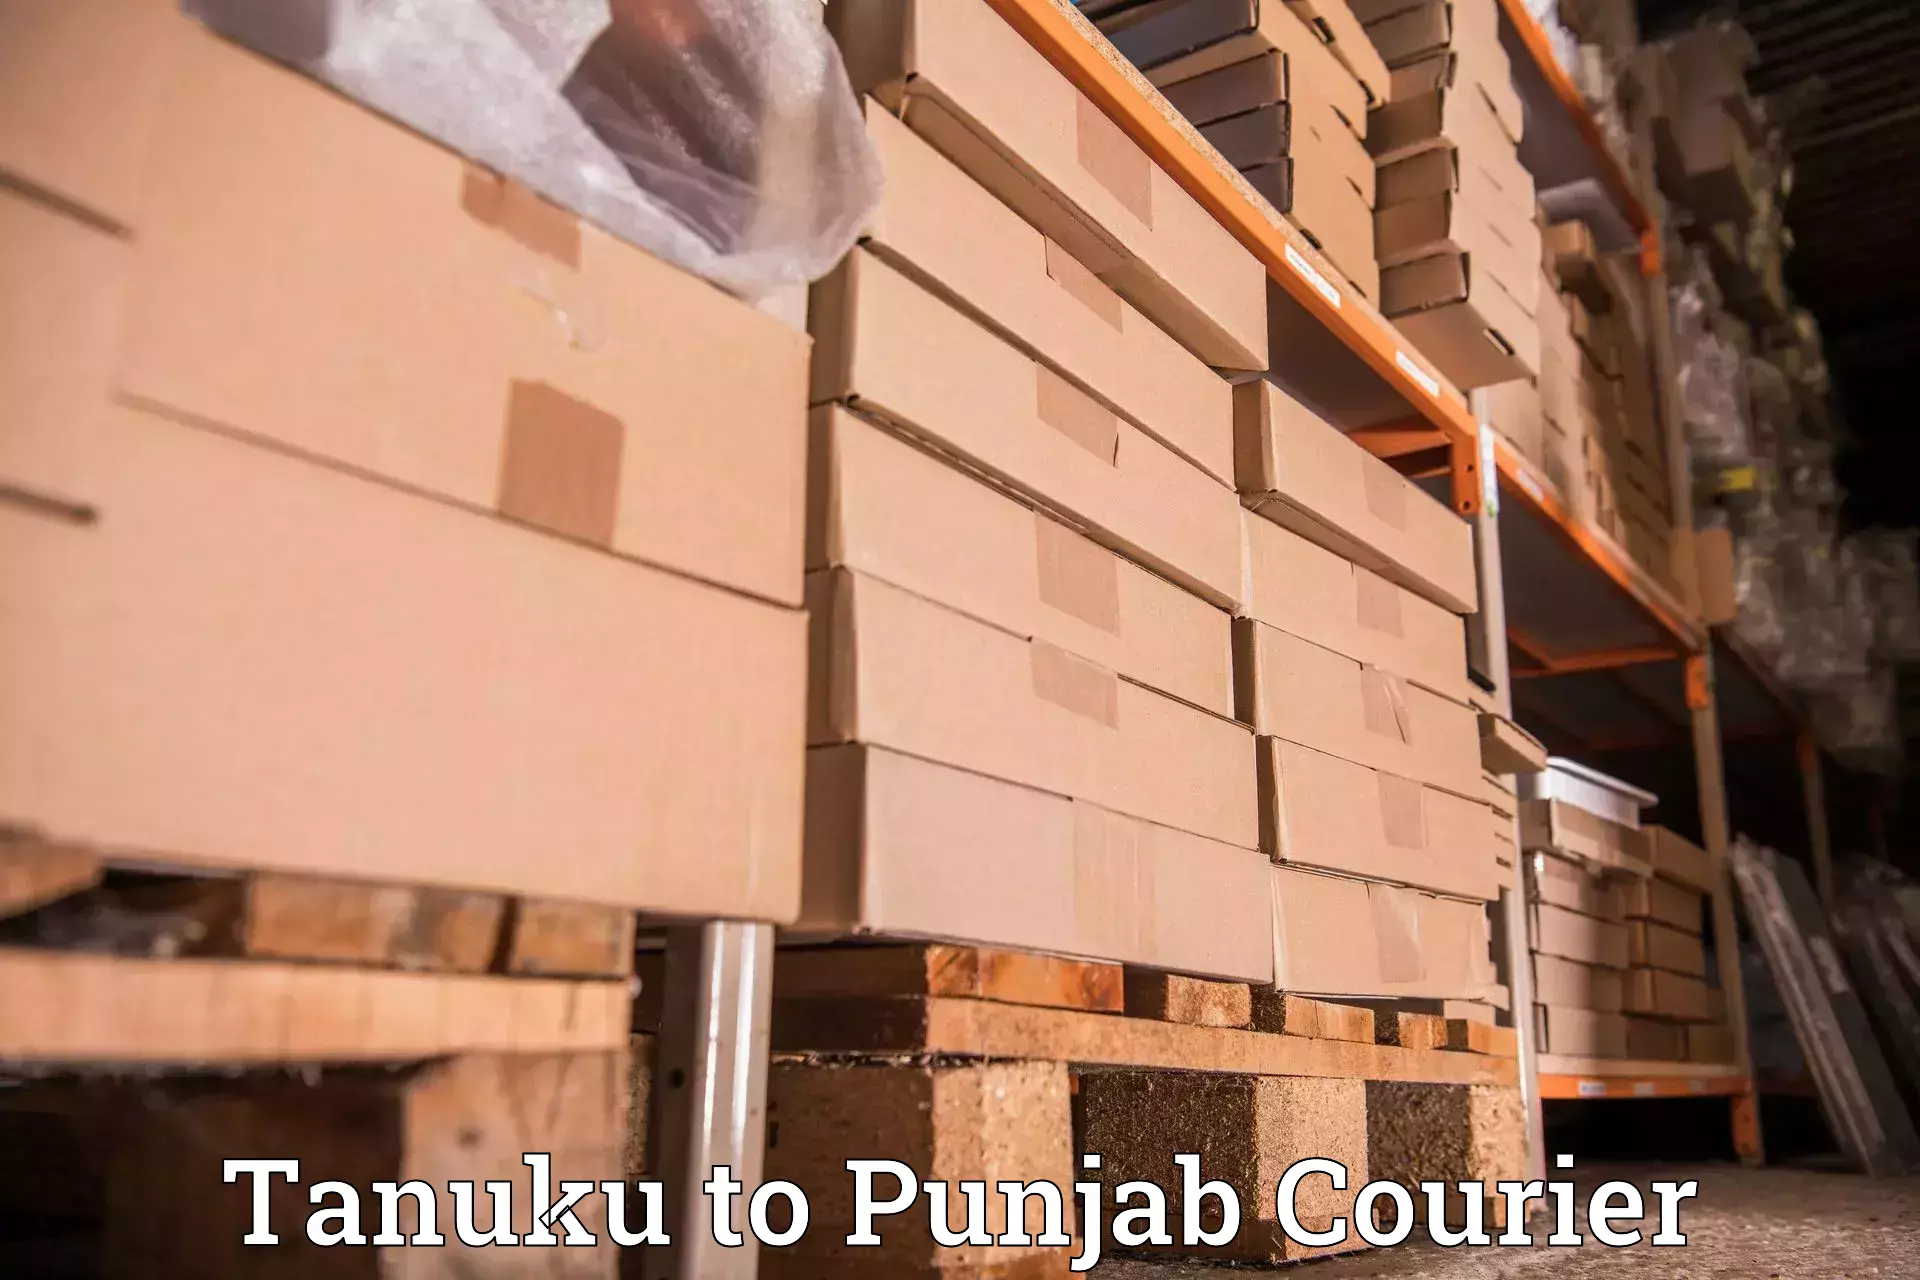 International parcel service Tanuku to Nangal